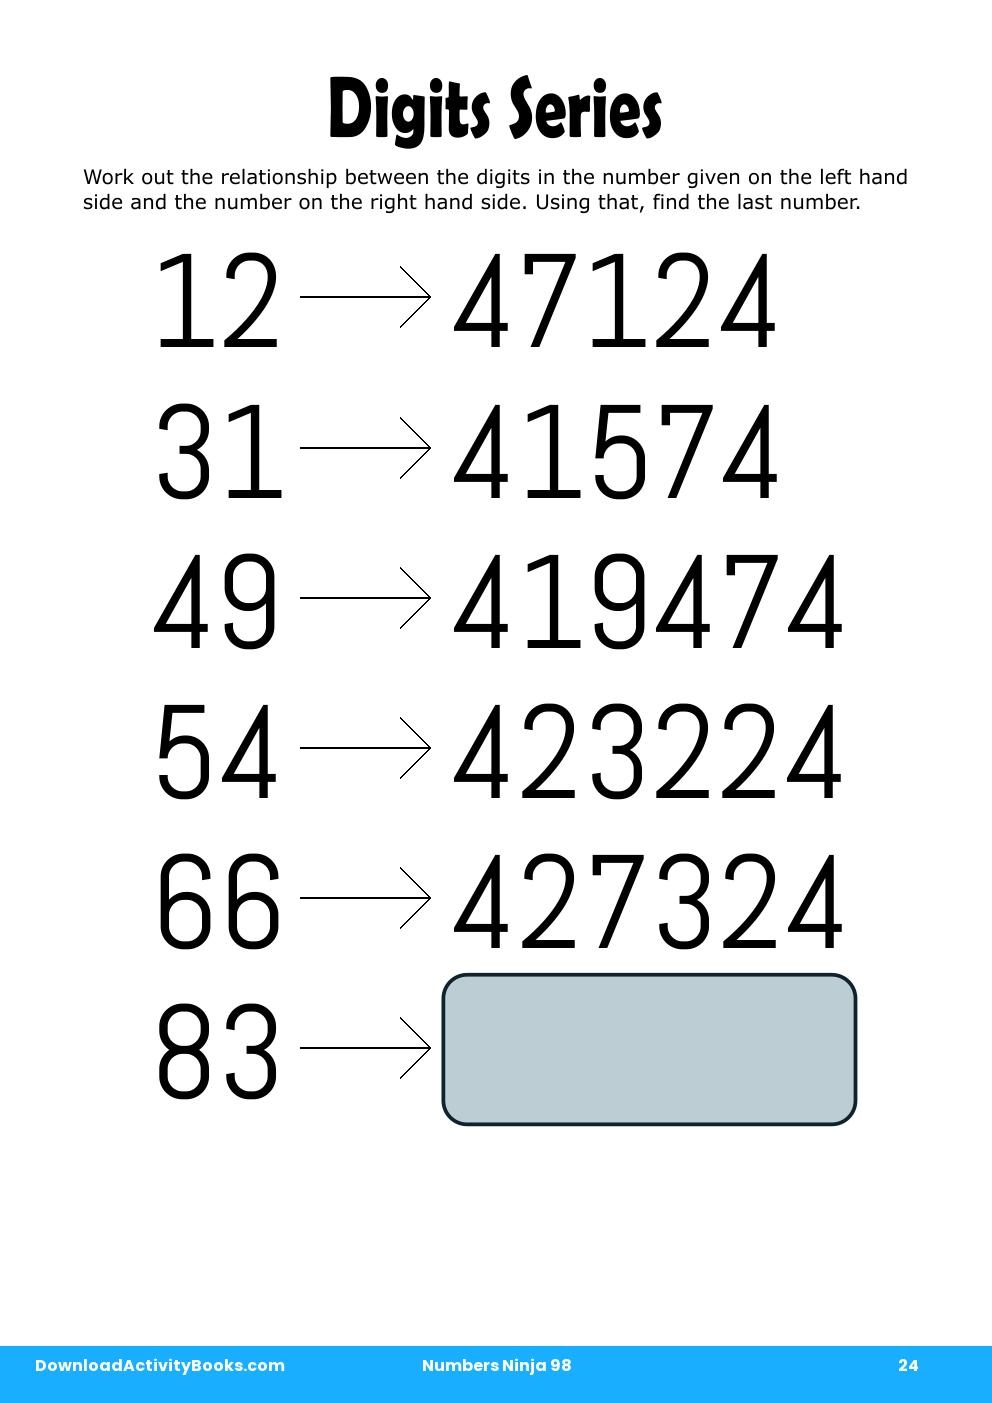 Digits Series in Numbers Ninja 98